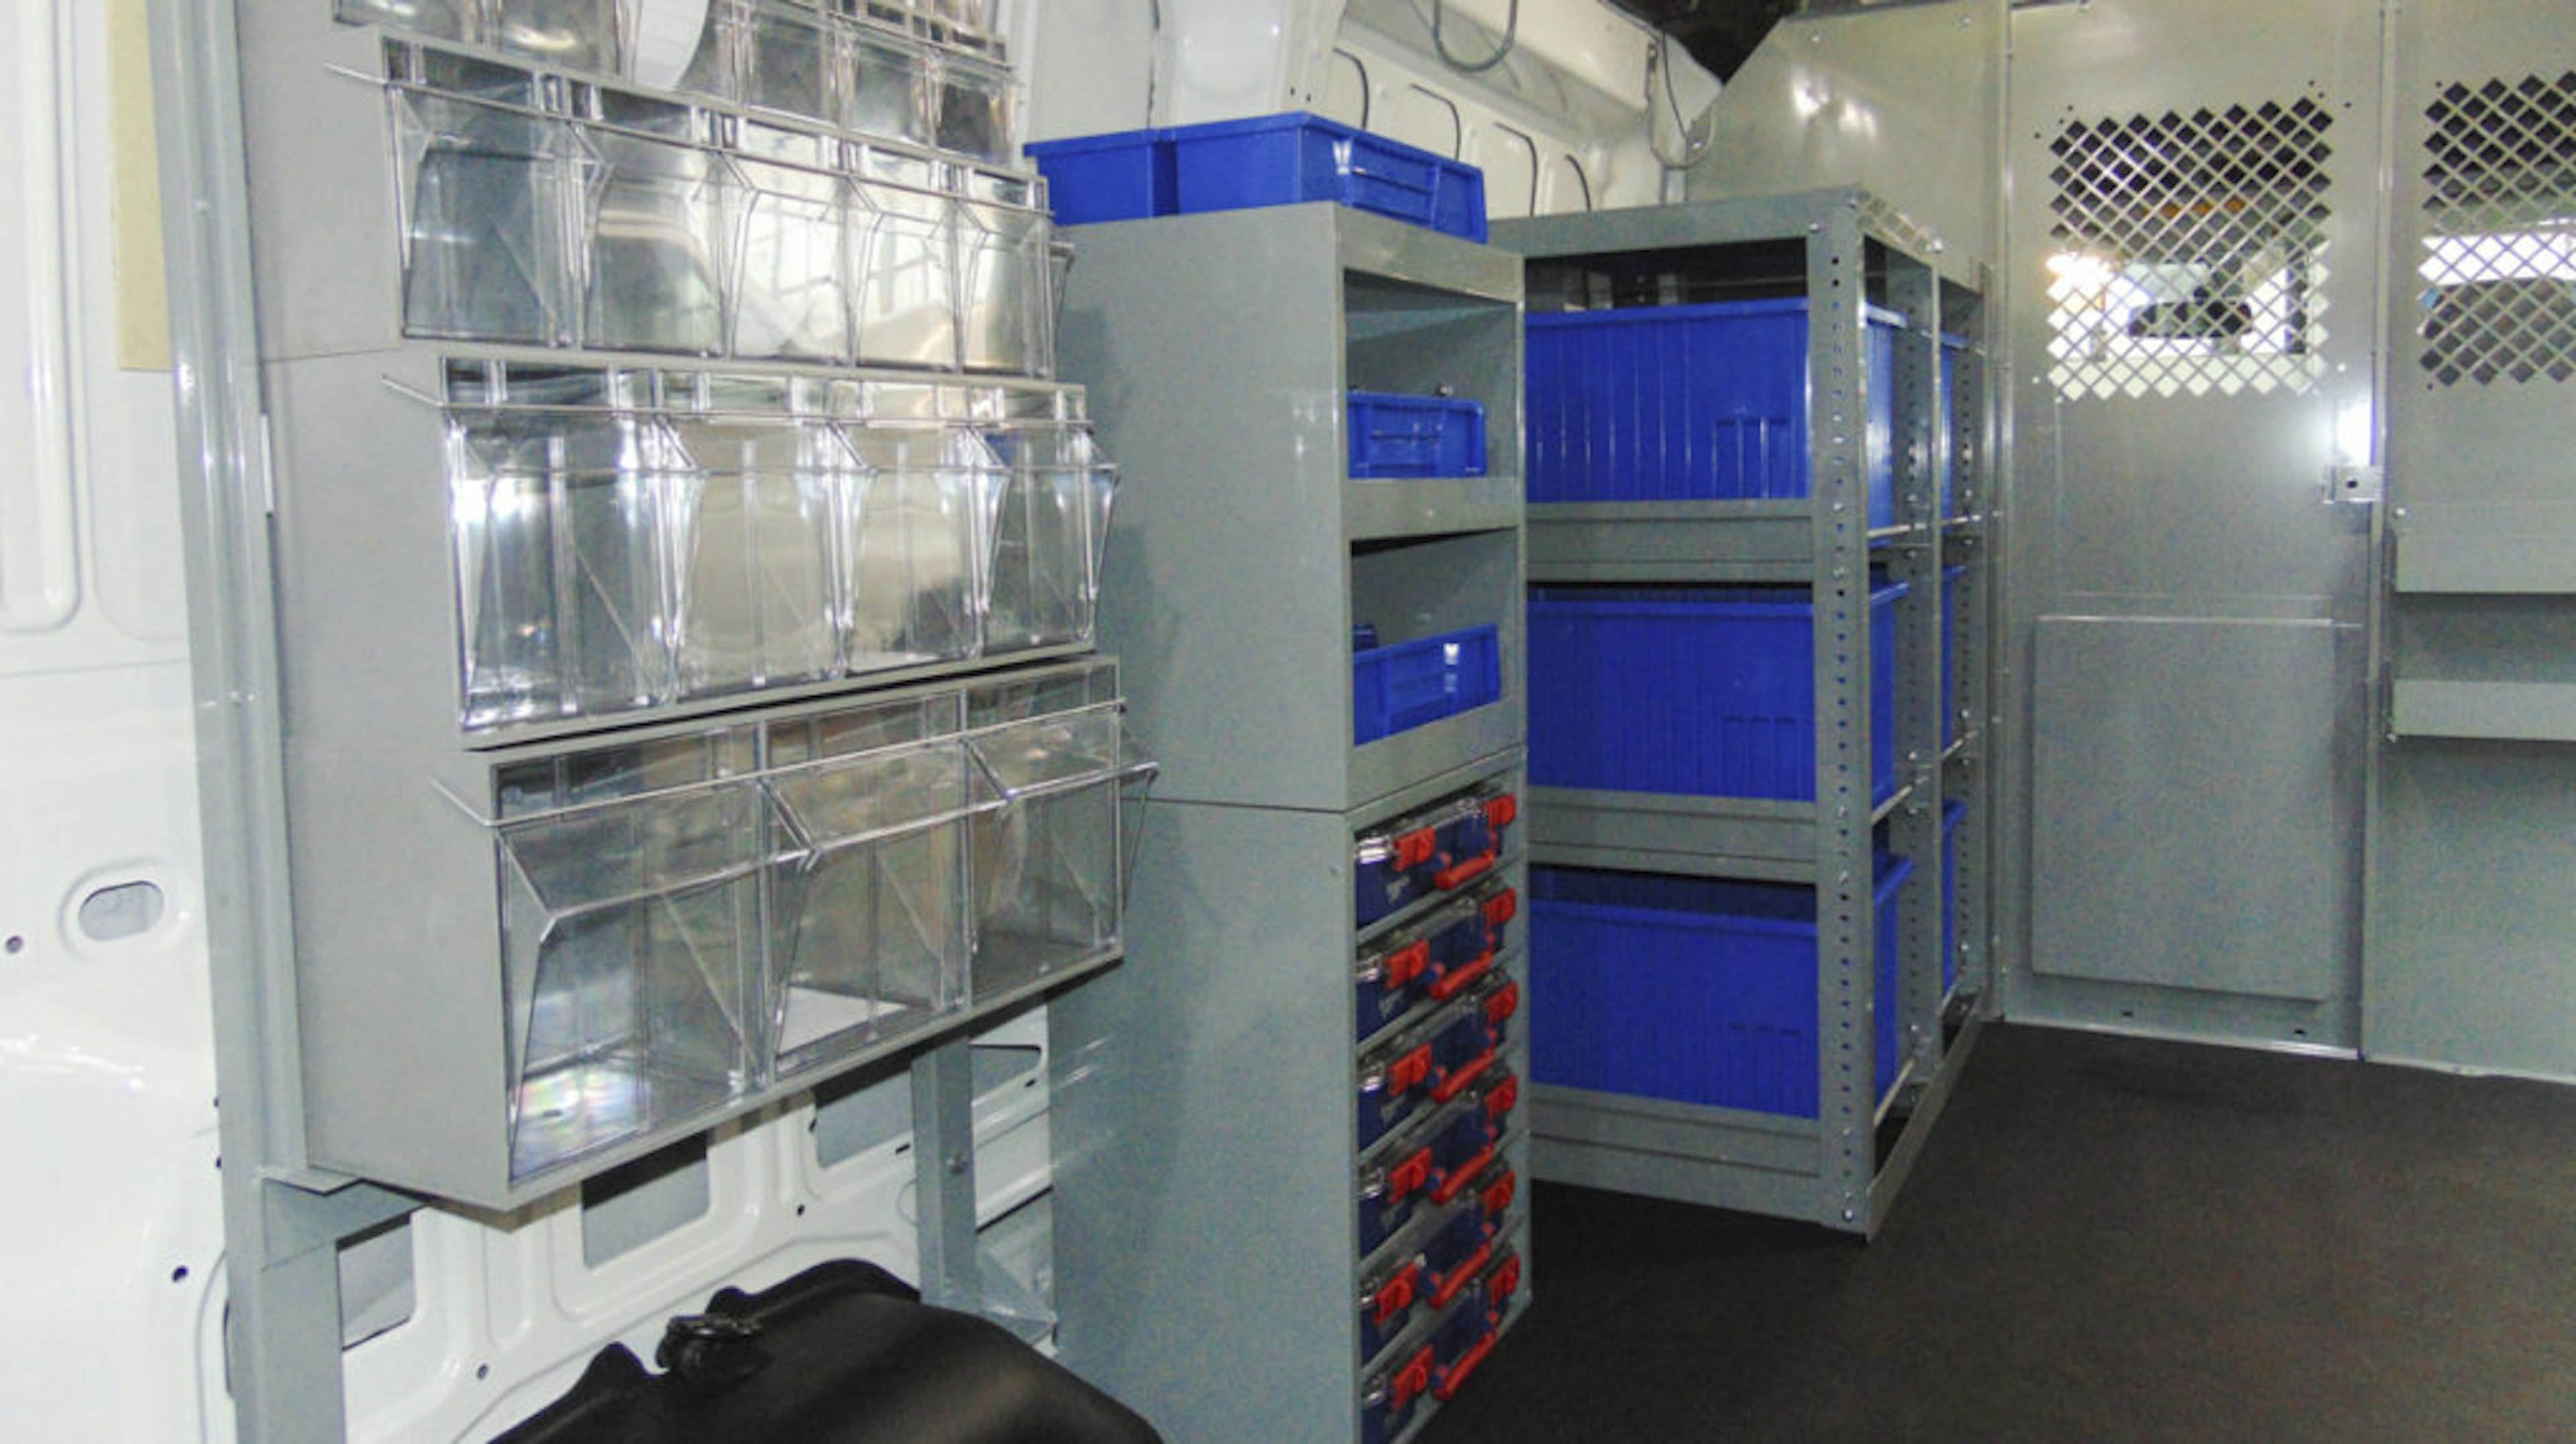 inventory management 02 clear storage bins